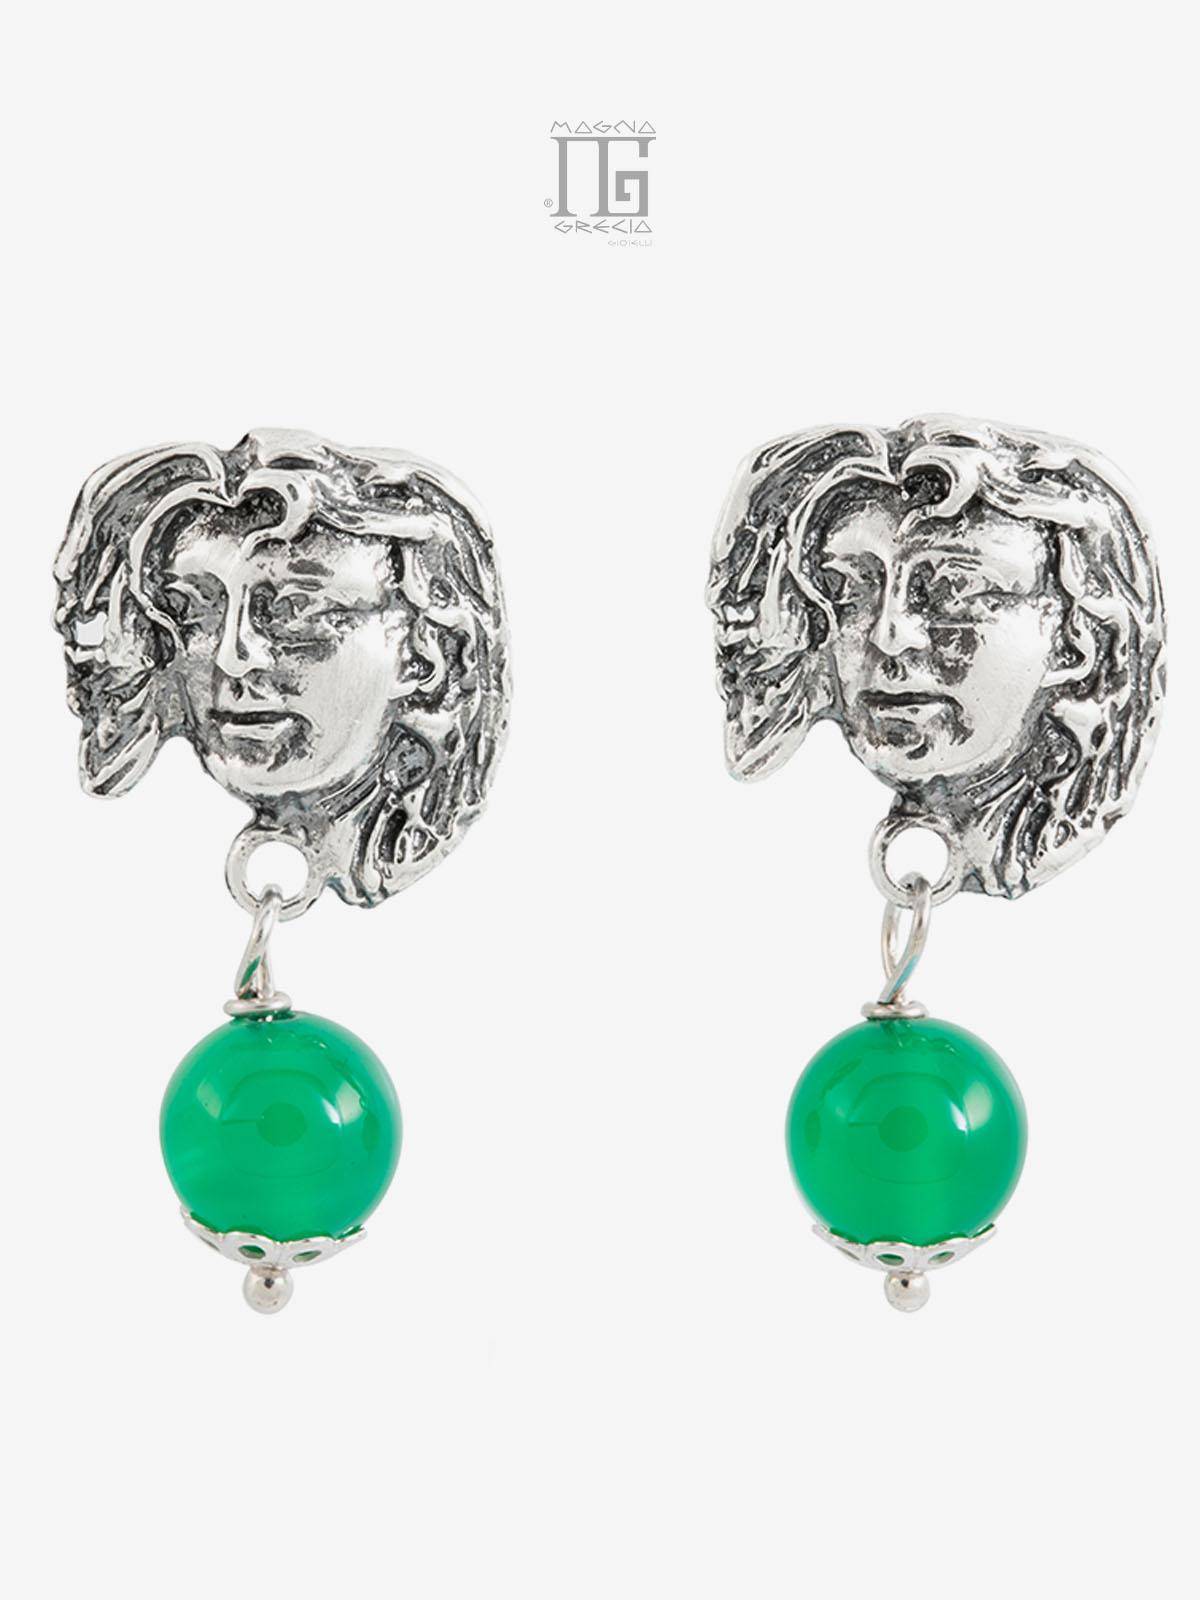 Pendientes “Fortuna” de plata con el rostro de la diosa Venus y piedra ágata verde Cod. MGK 3852 V-2.